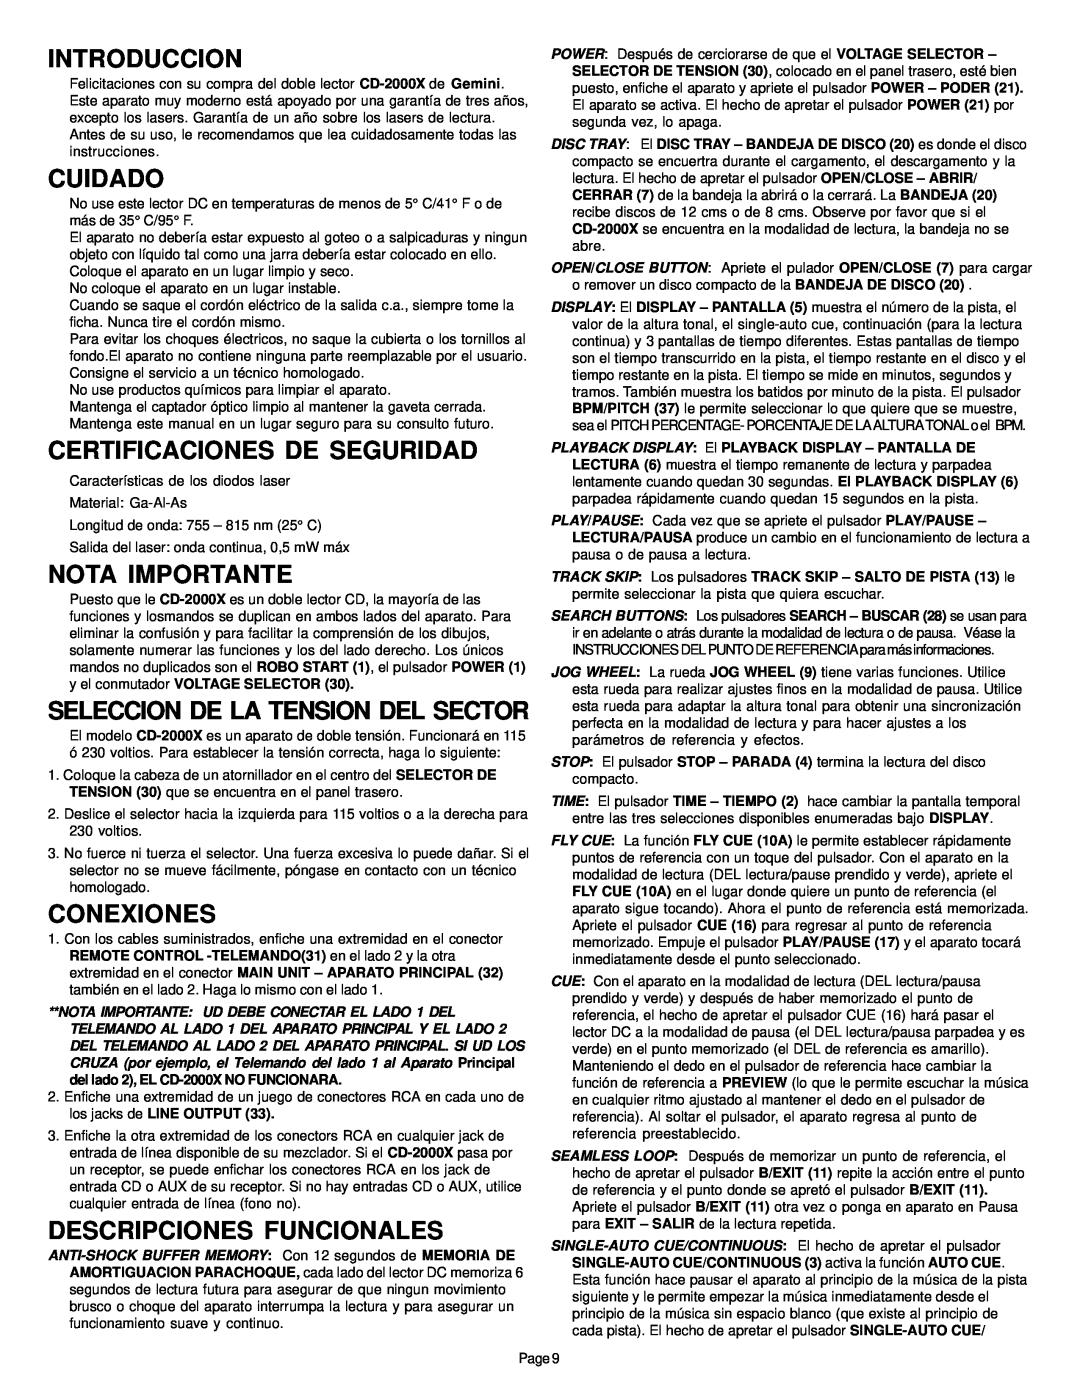 Gemini CD-2000X manual Introduccion, Cuidado, Certificaciones De Seguridad, Nota Importante, Conexiones 